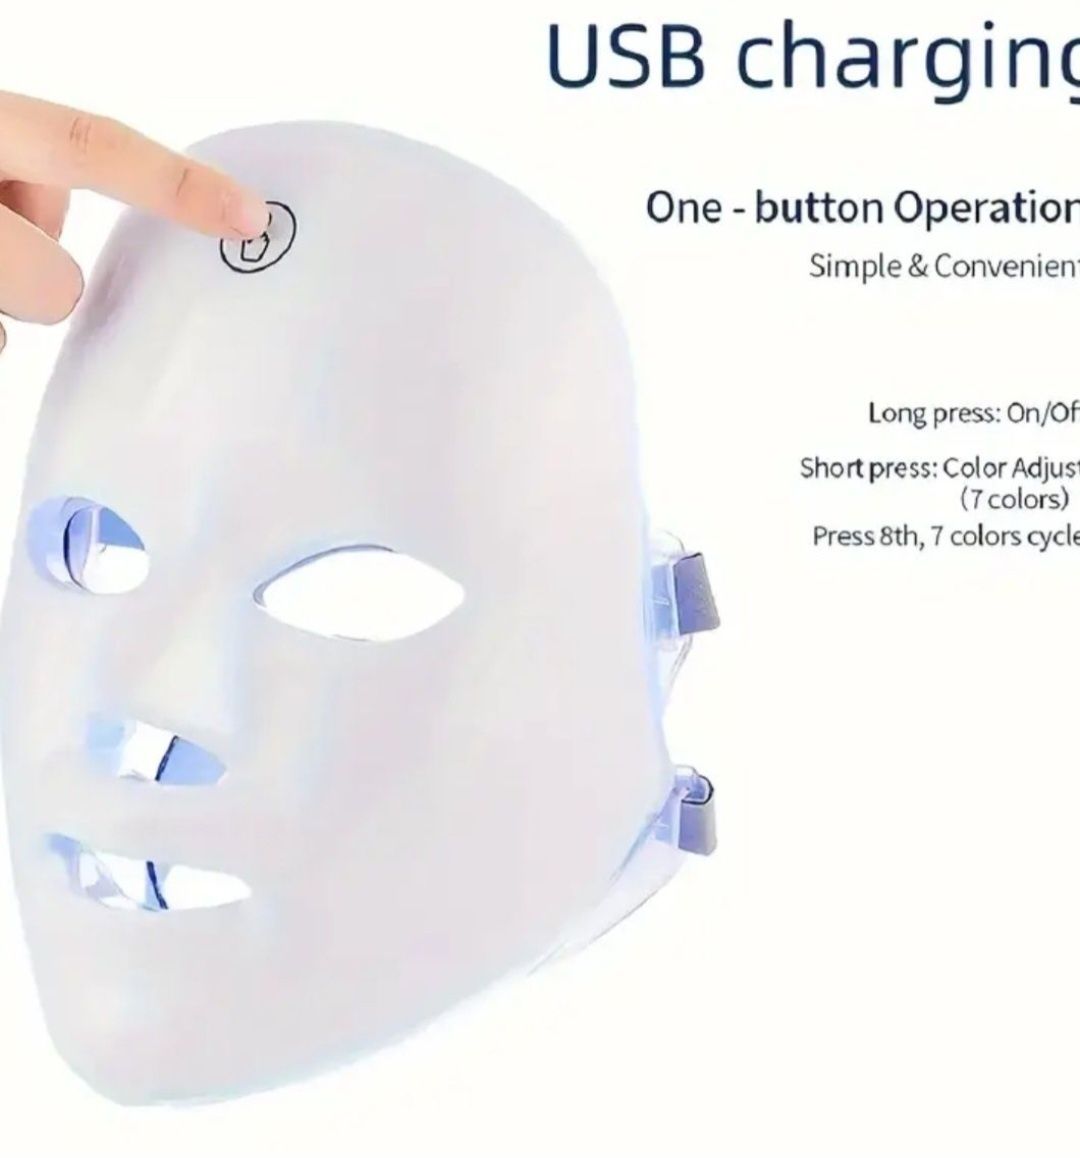 Maska LED na zmarszczki jędrność poprawa skóry gojenie ran trądzik